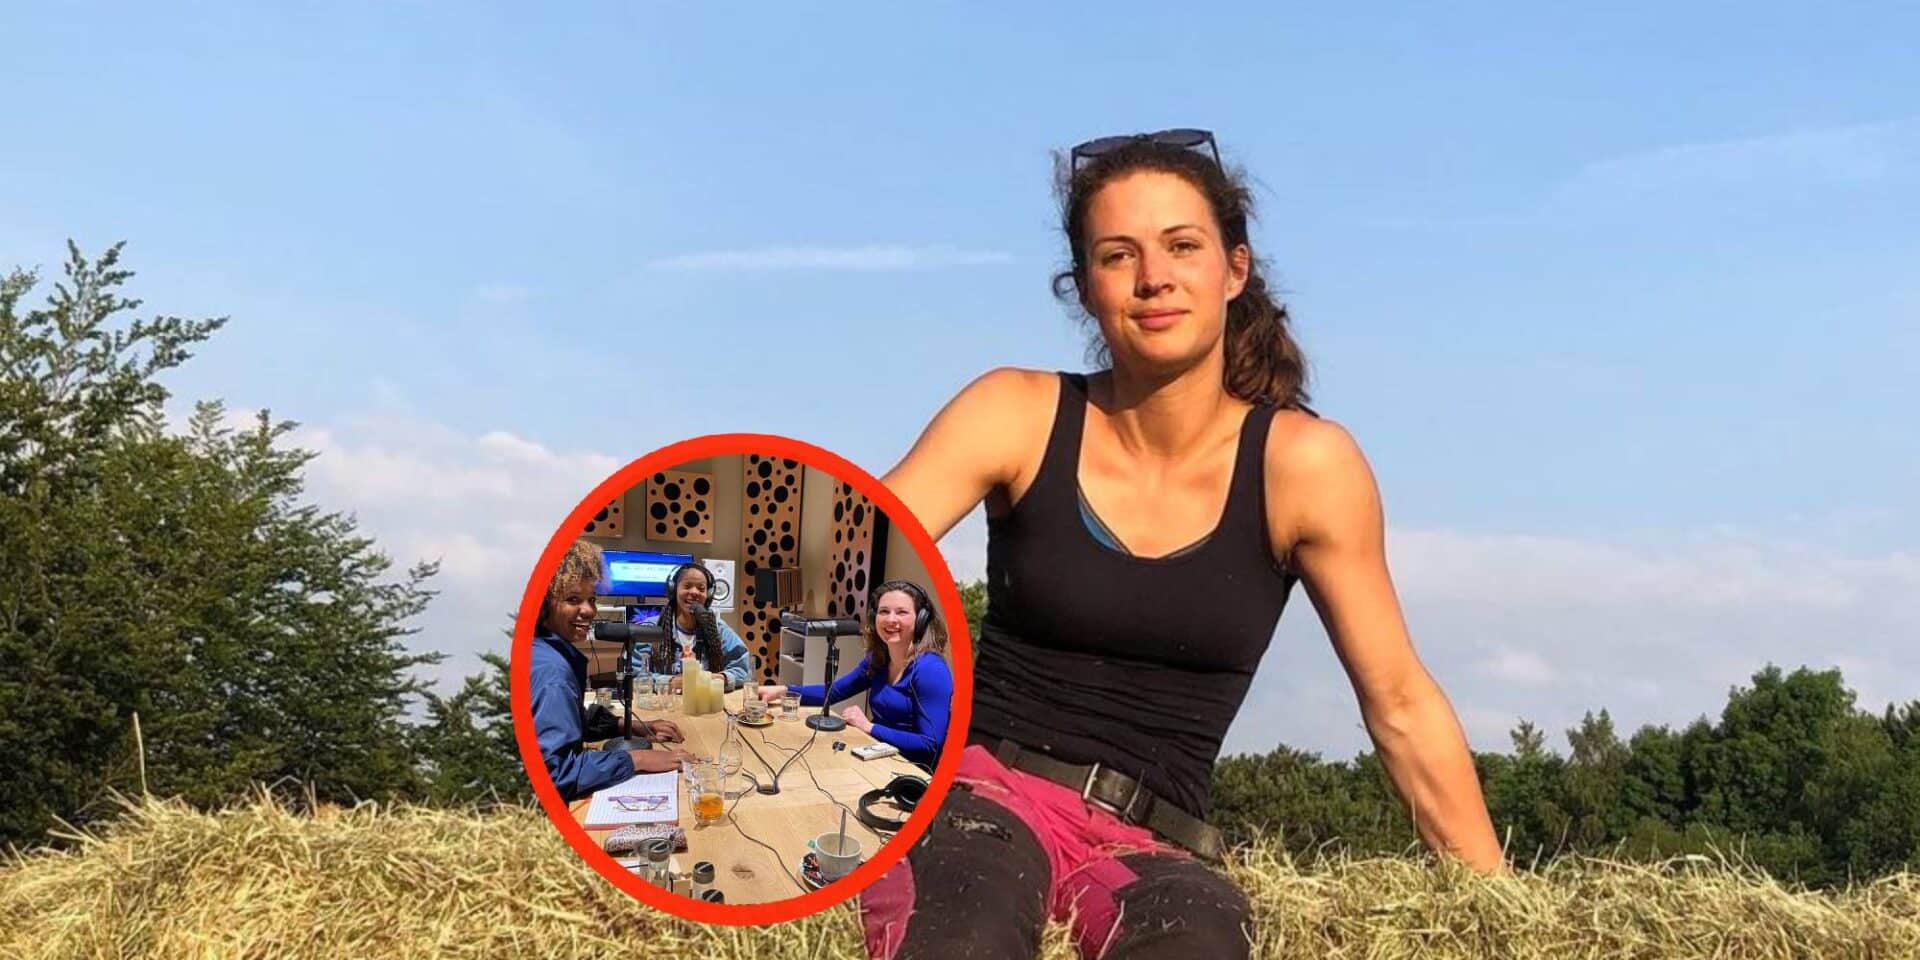 Boerin Annemiek Koekoek foto 5000 euro boer zoekt vrouw